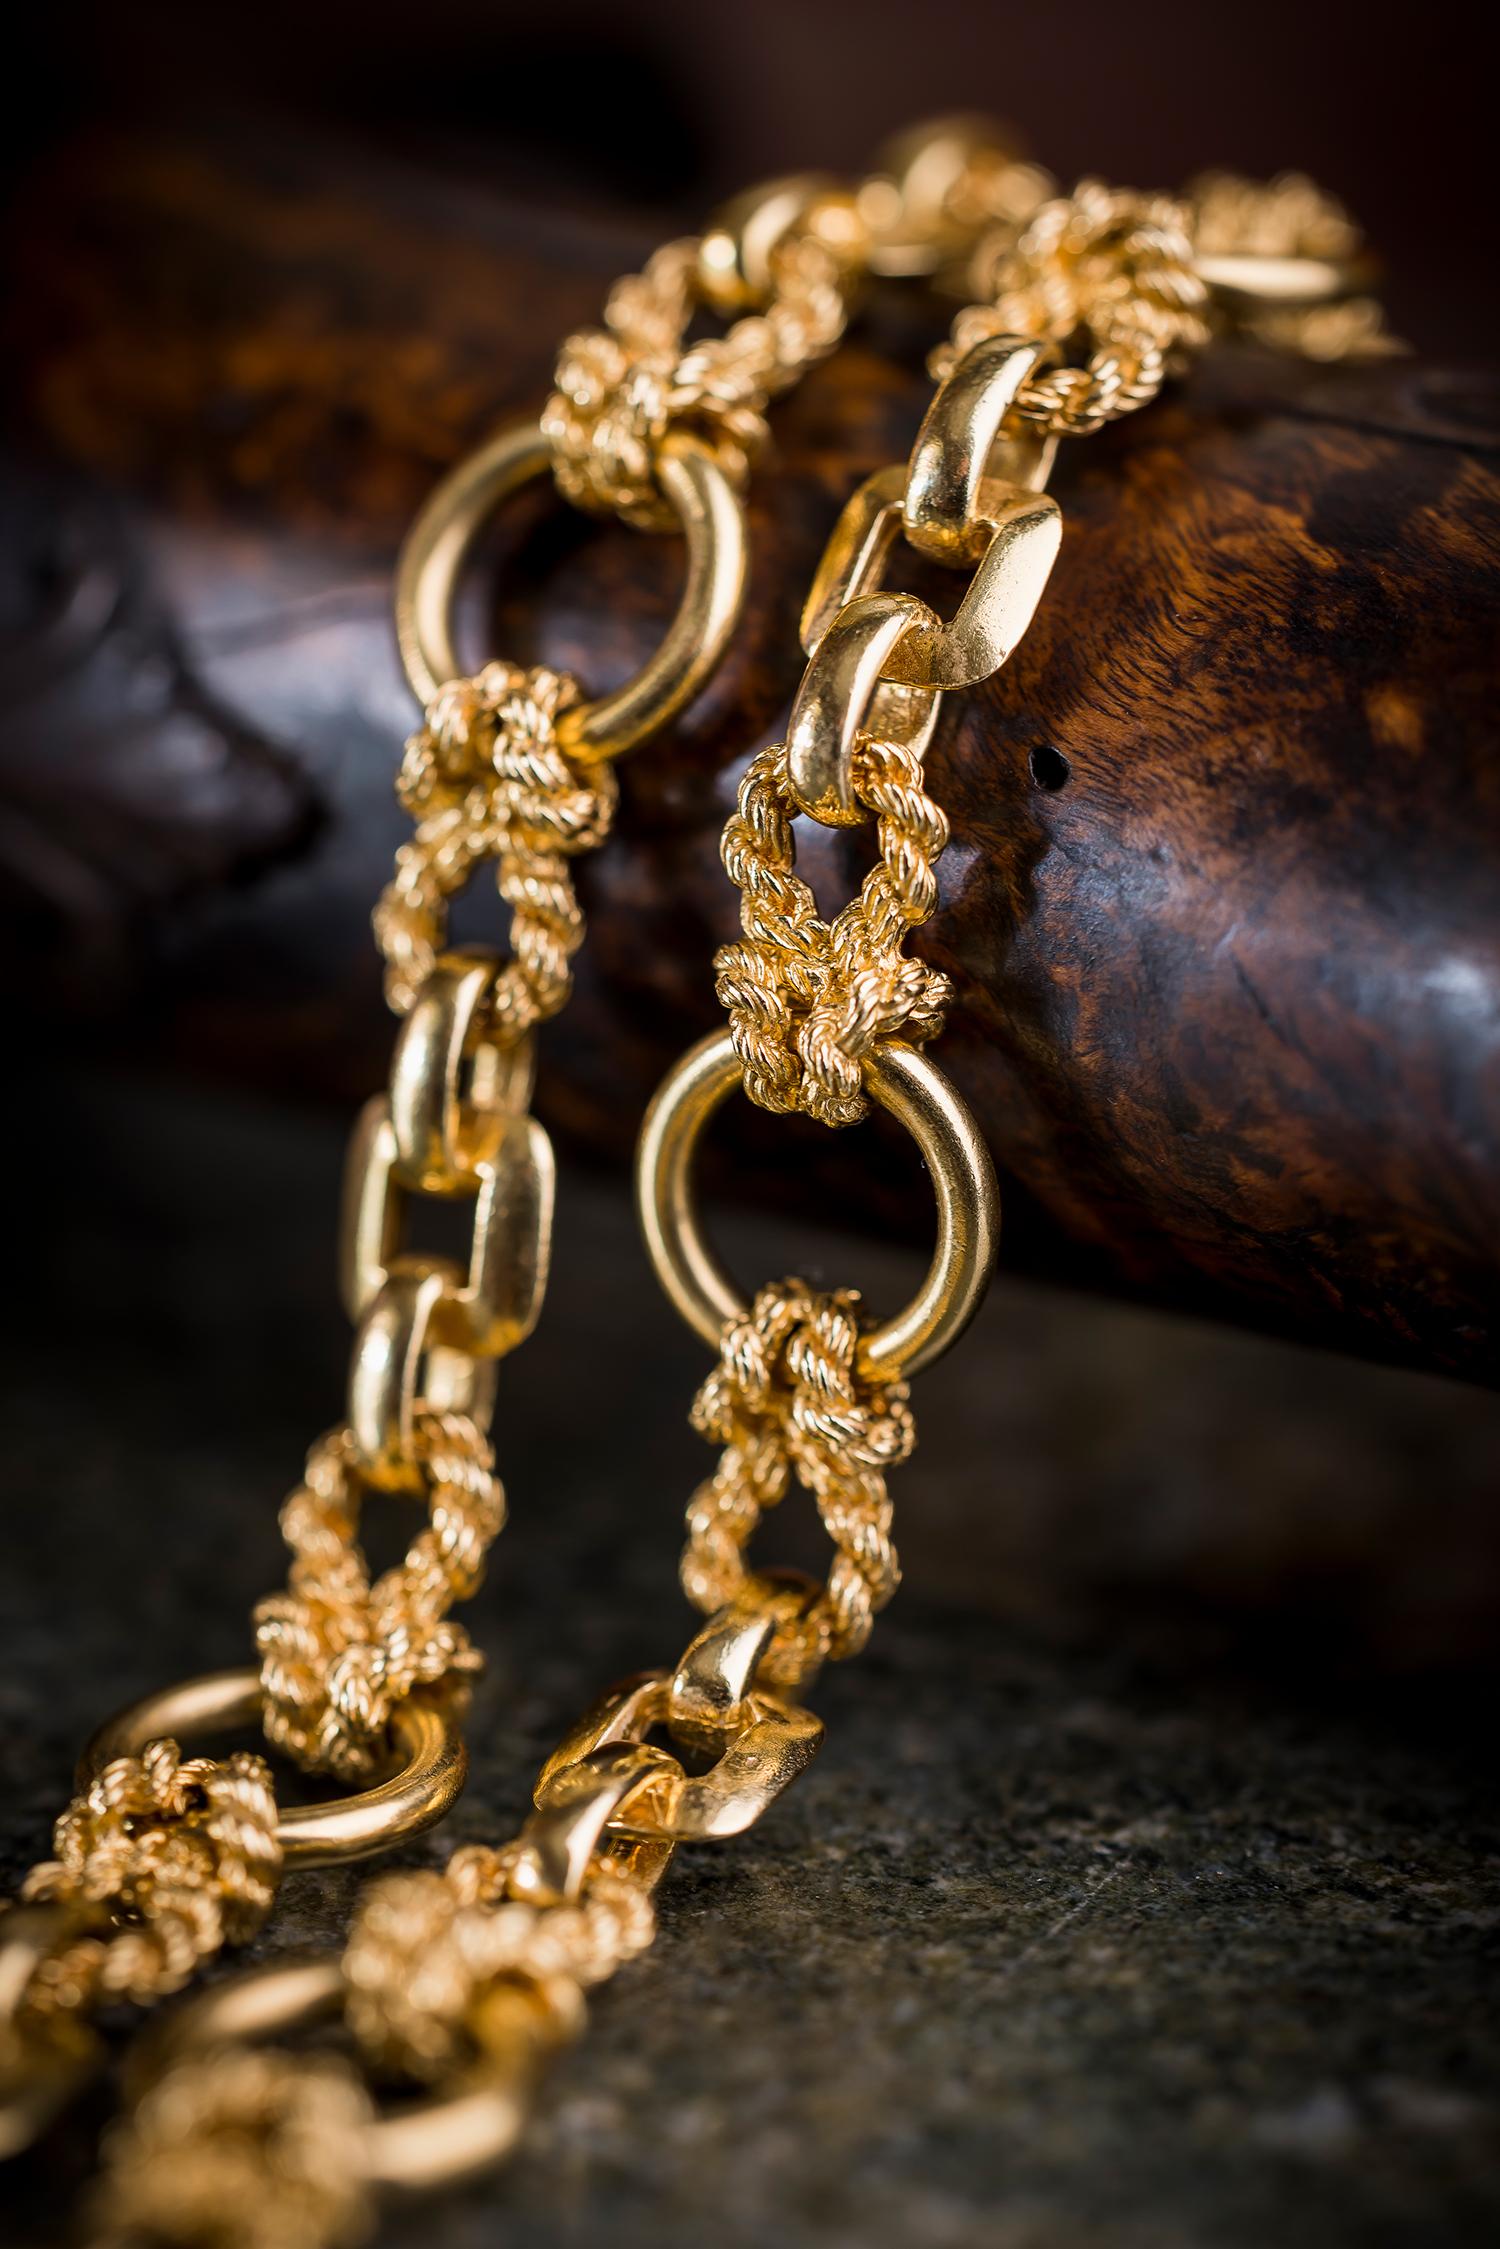 Das ist so fantastisch! 

Seltene 18K Gelbgold Nautical Rope Link Halskette und Armband Set von Hermès

Halskette und Armband aus 18 Karat Gelbgold mit seilartigen Gliedern, einer Schleife aus gedrehtem Golddraht, dem ikonischen Hermès-Knotenmotiv,